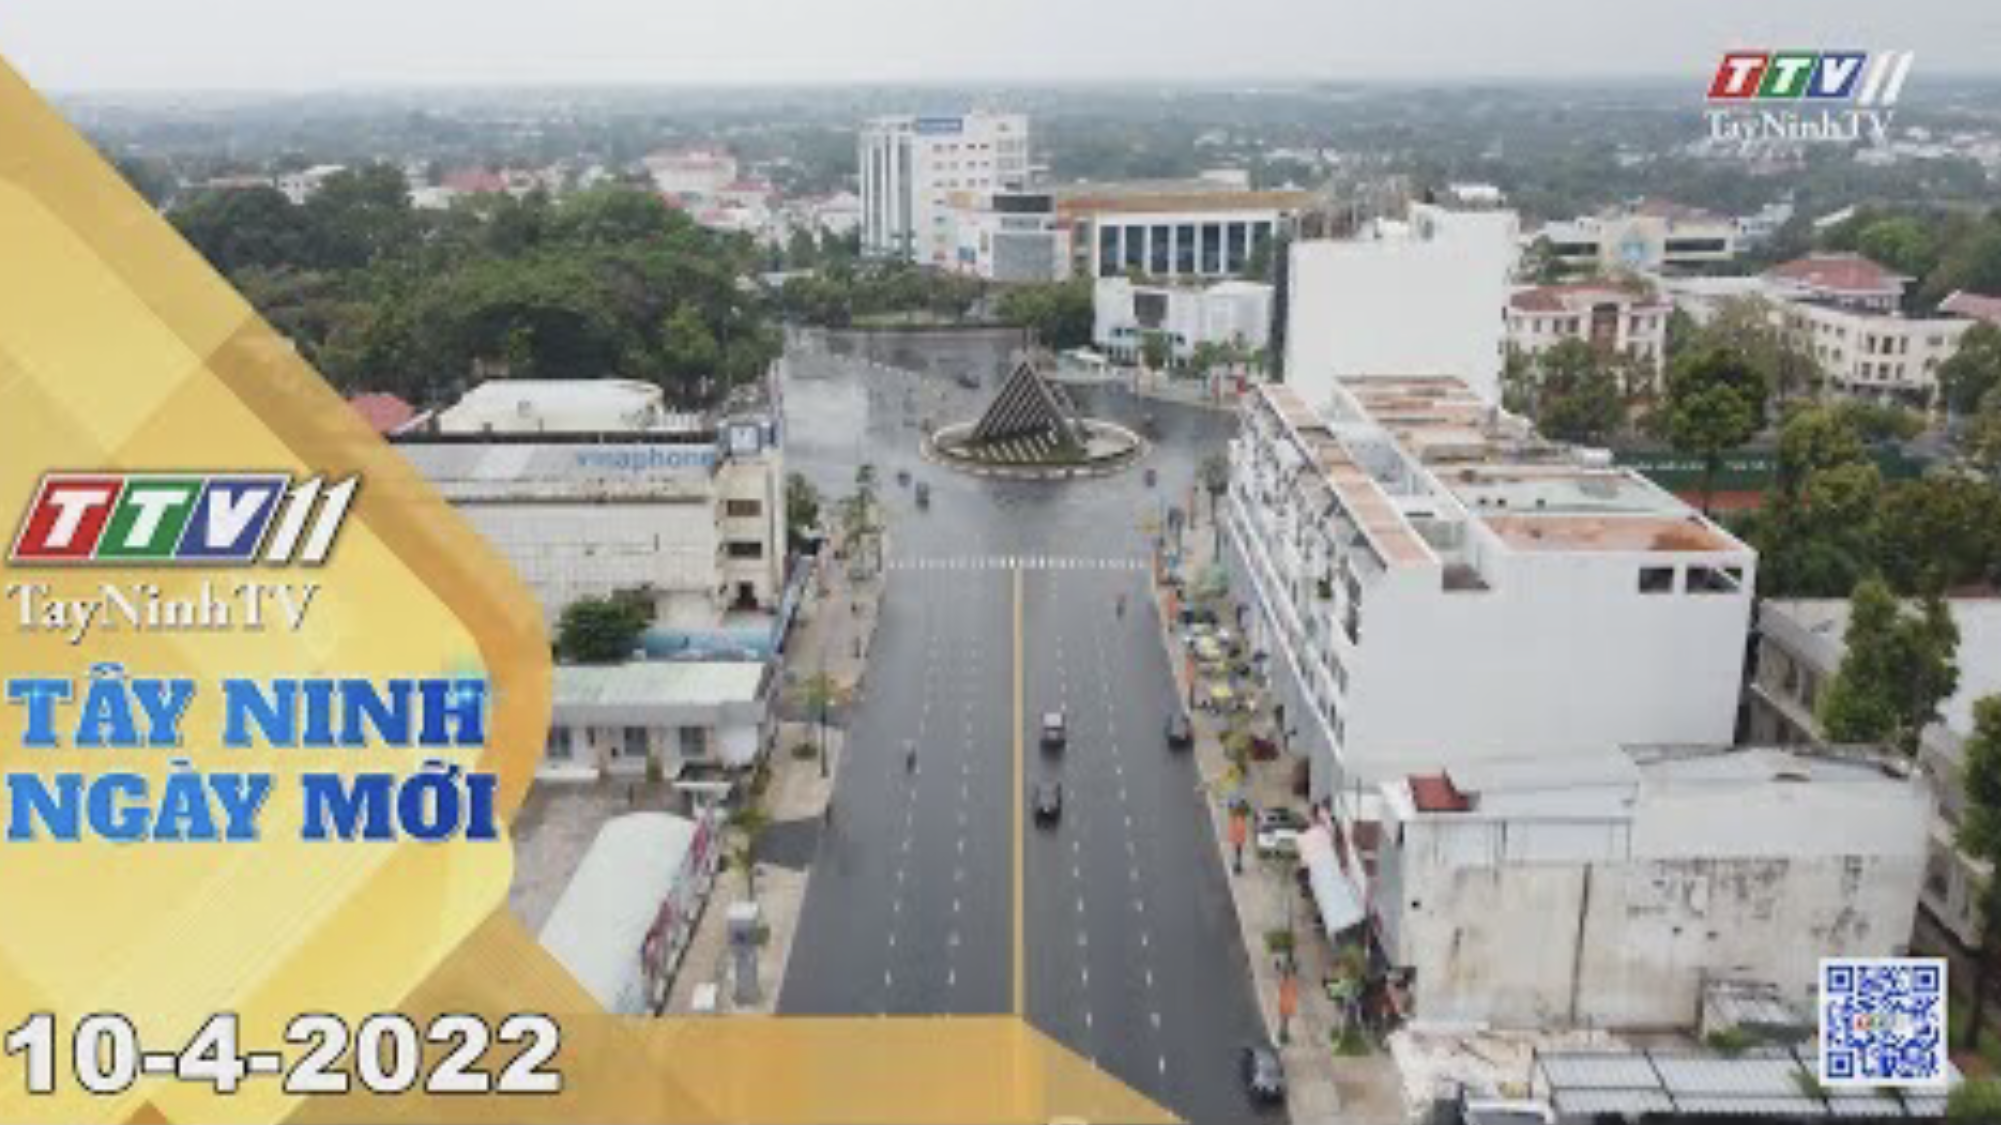 Tây Ninh ngày mới 10-4-2022 | Tin tức hôm nay | TayNinhTV